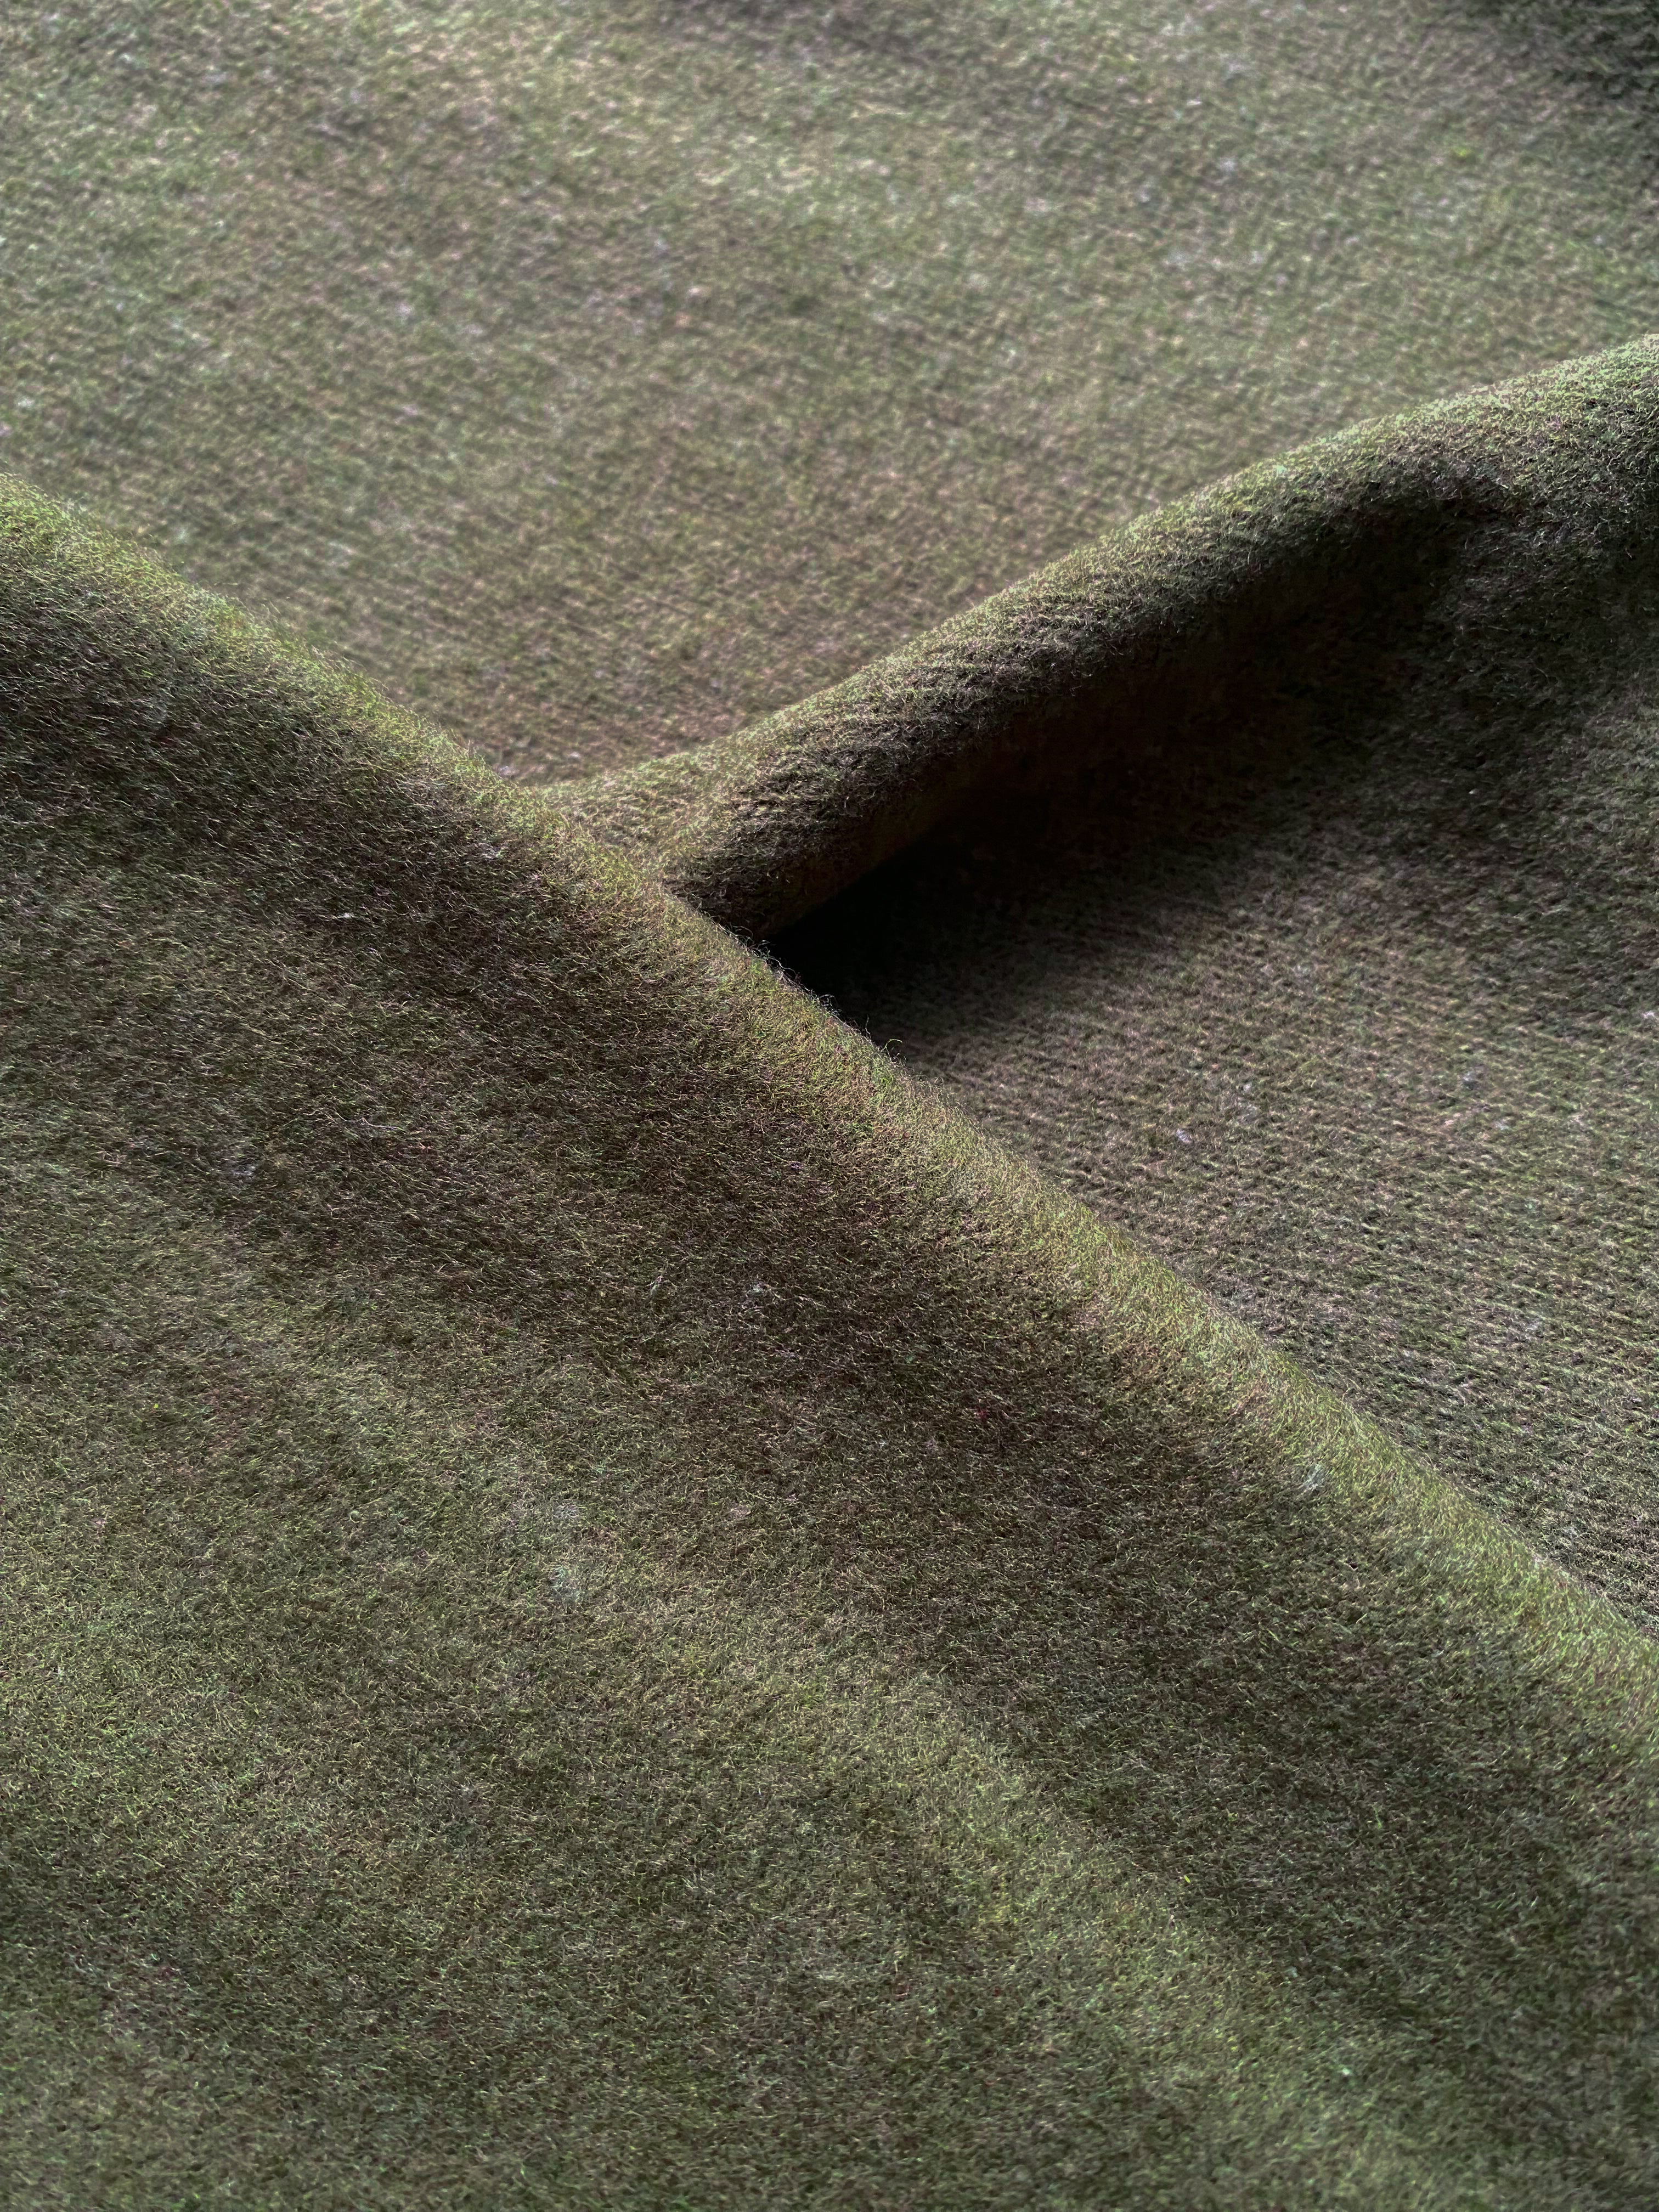 No. 1038 Soft knit moss green